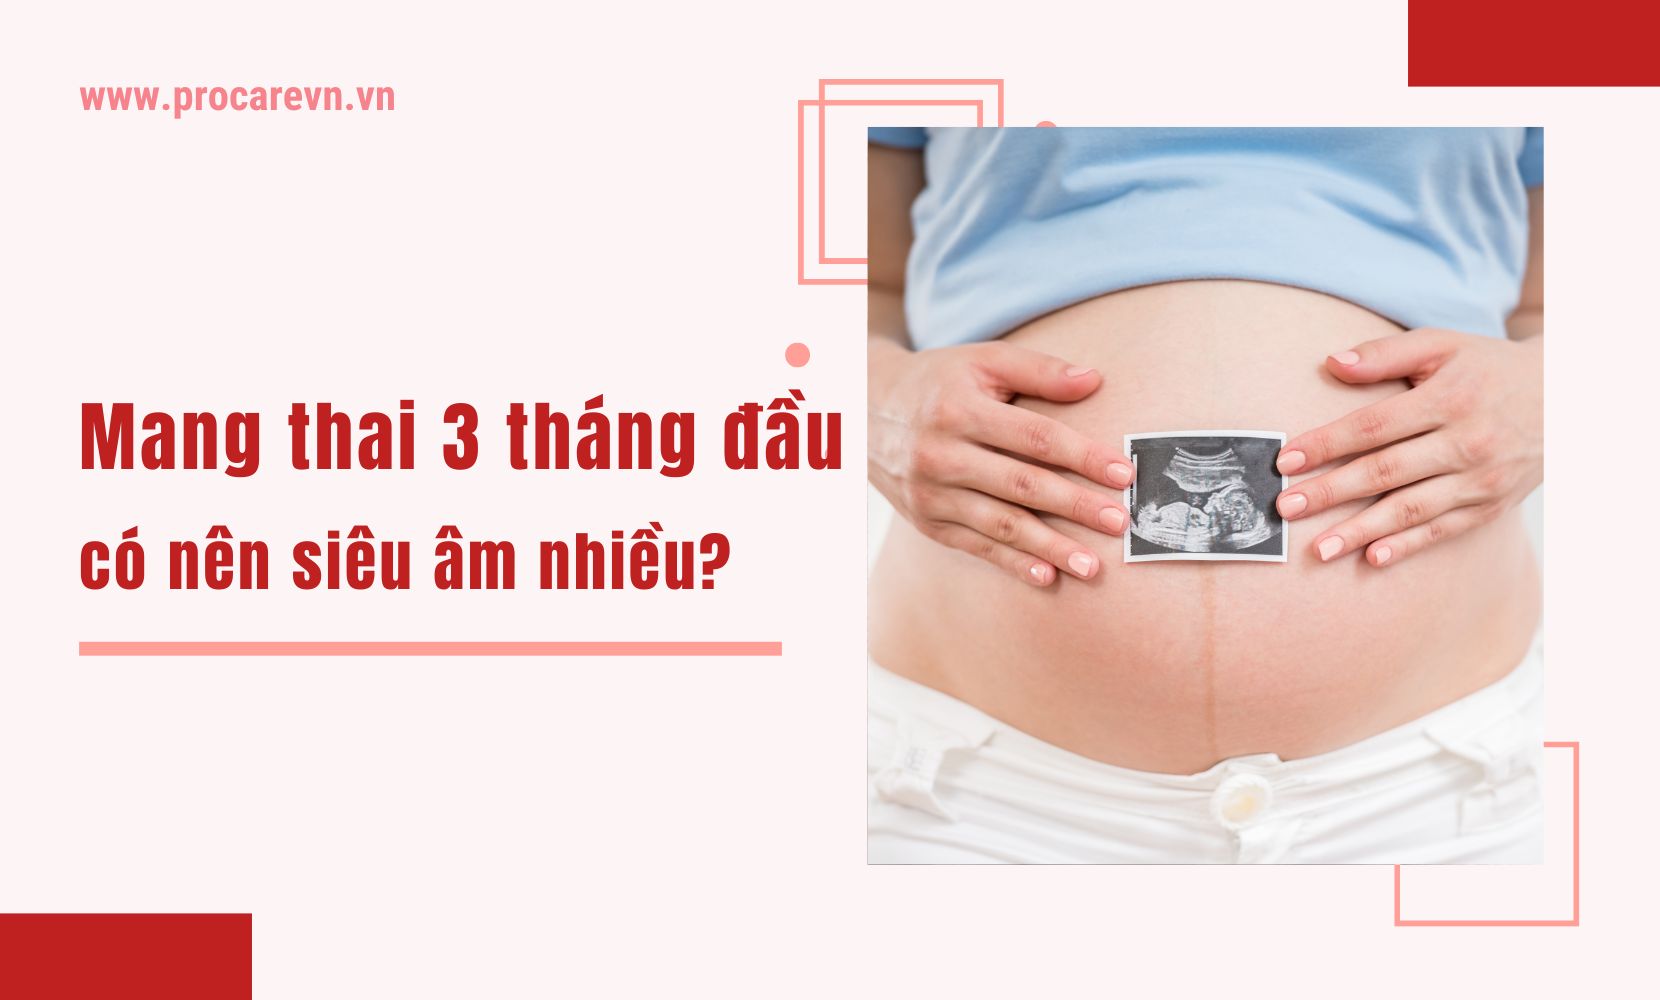 Mang thai 3 tháng đầu có nên siêu âm nhiều?